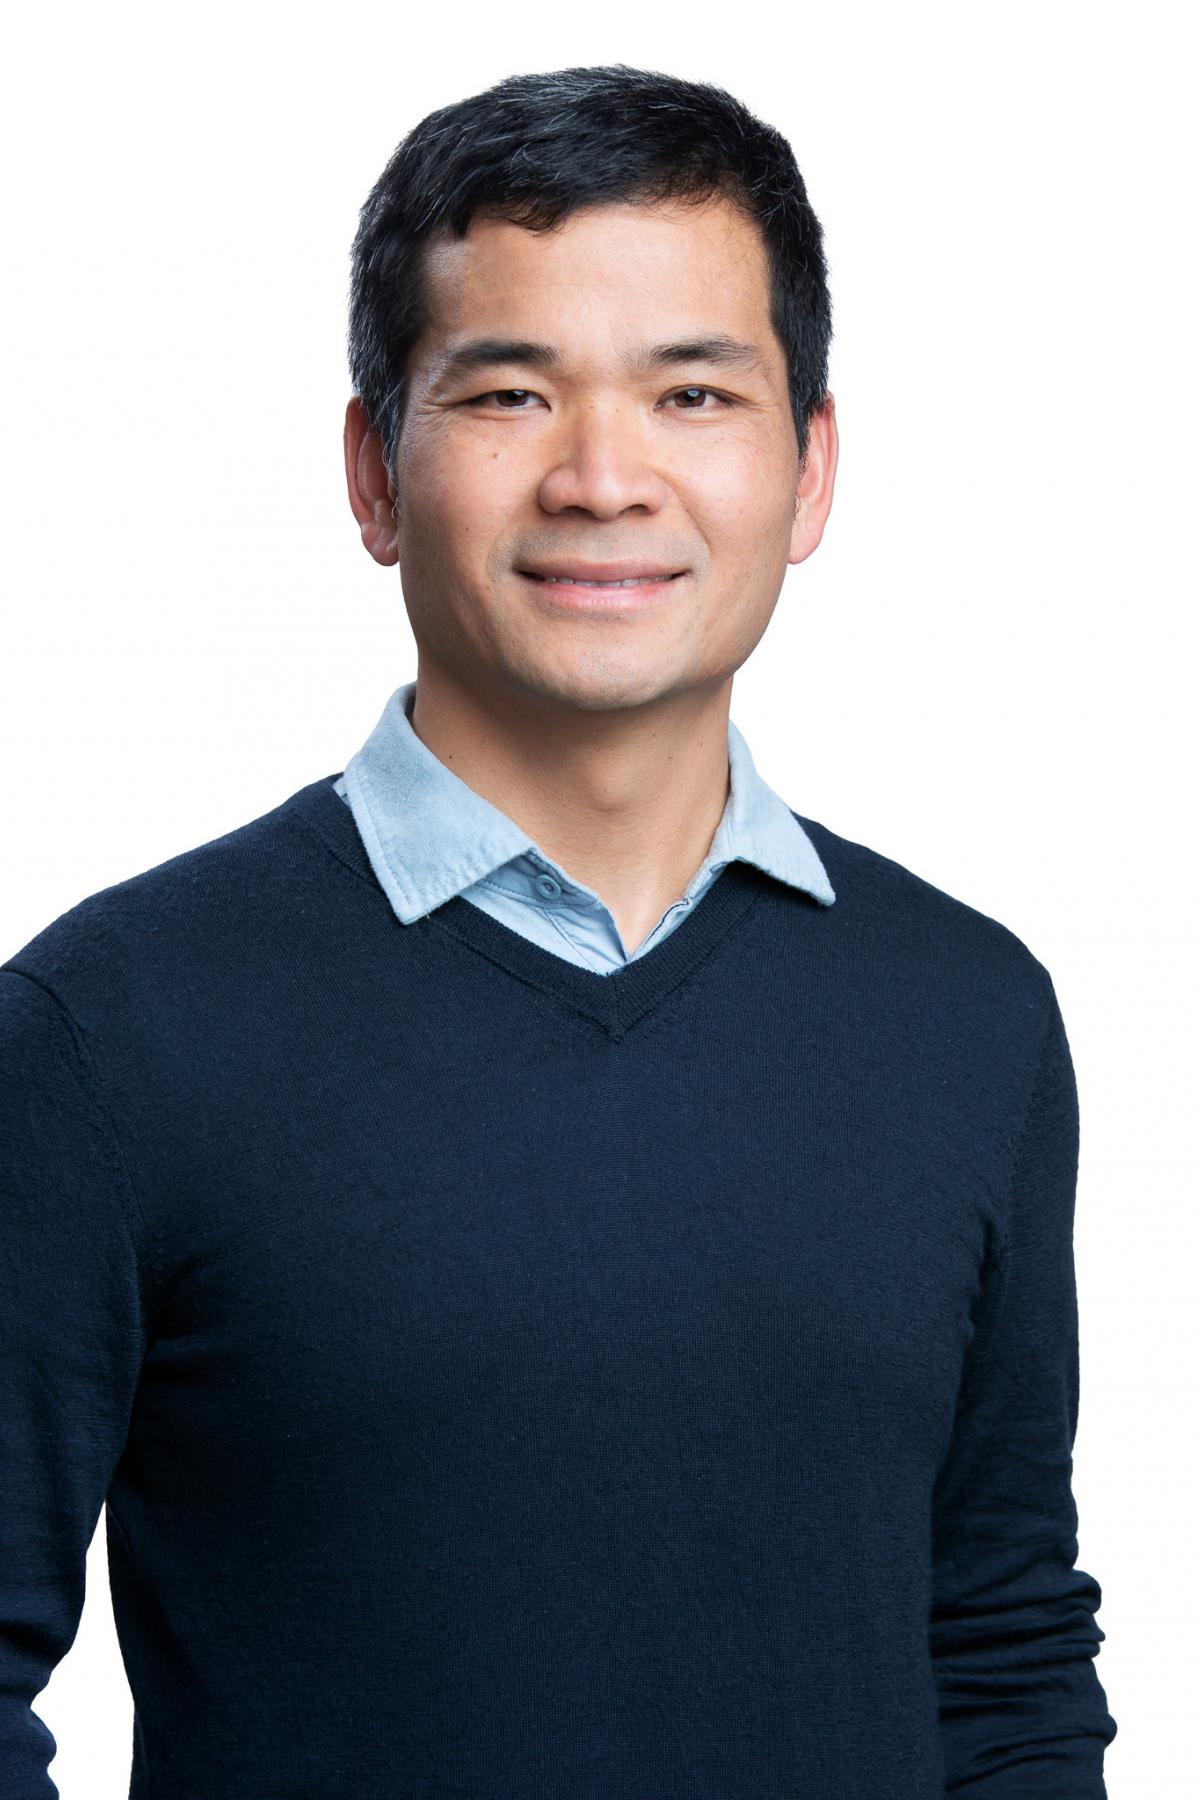 Associate Professor Hung Nguyen